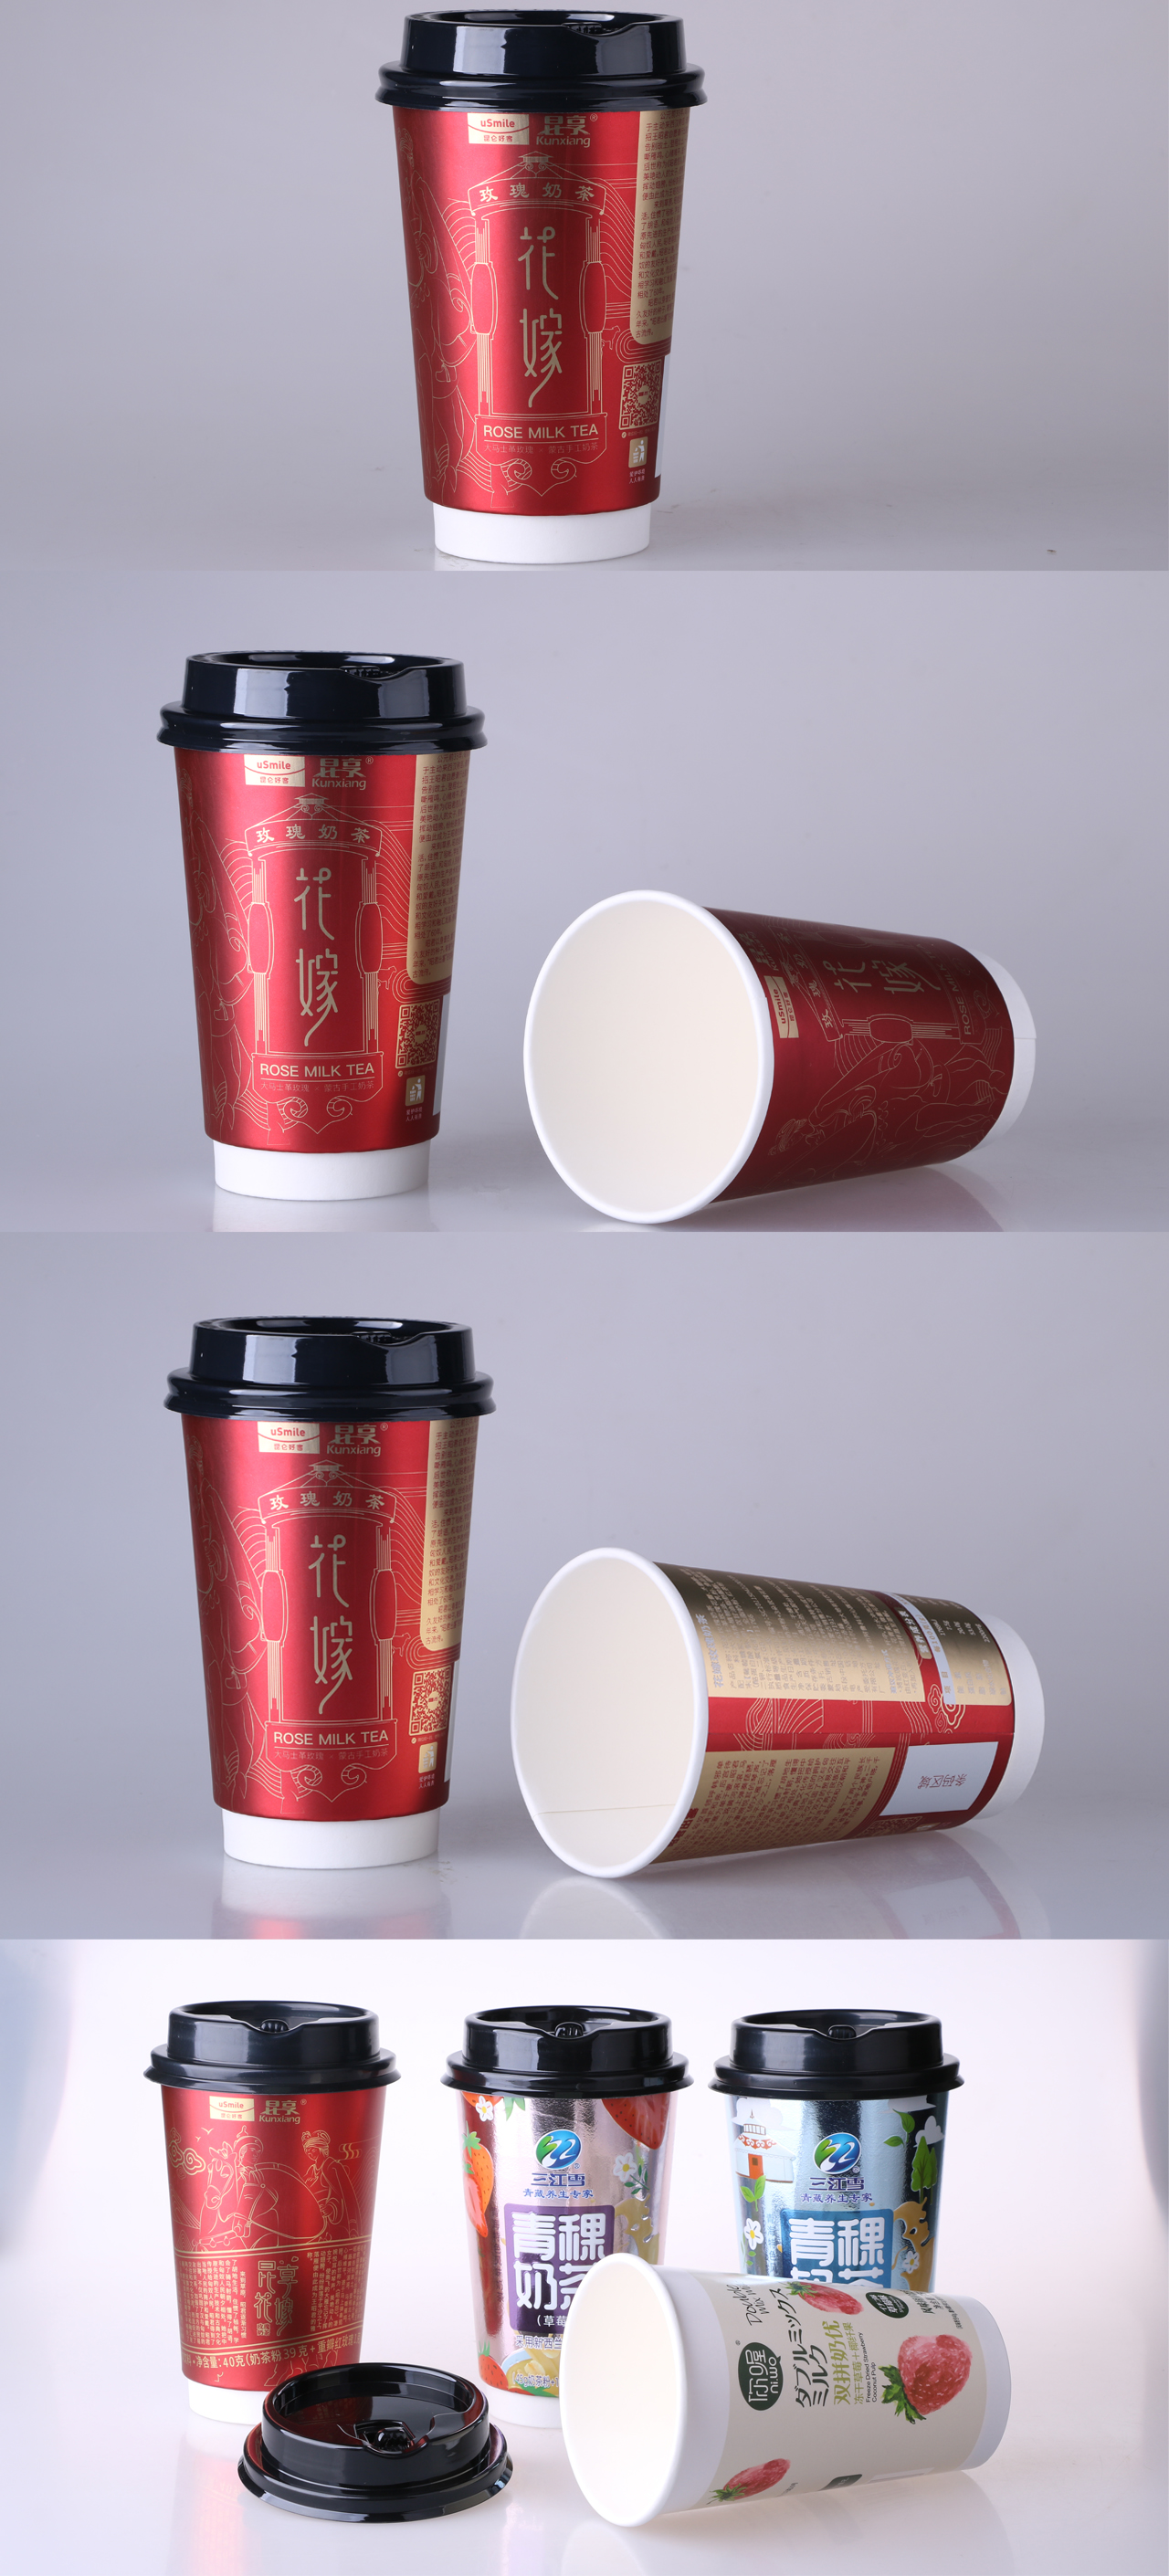 זריקה אמיתית - כוס נייר קפה של 12 גרם